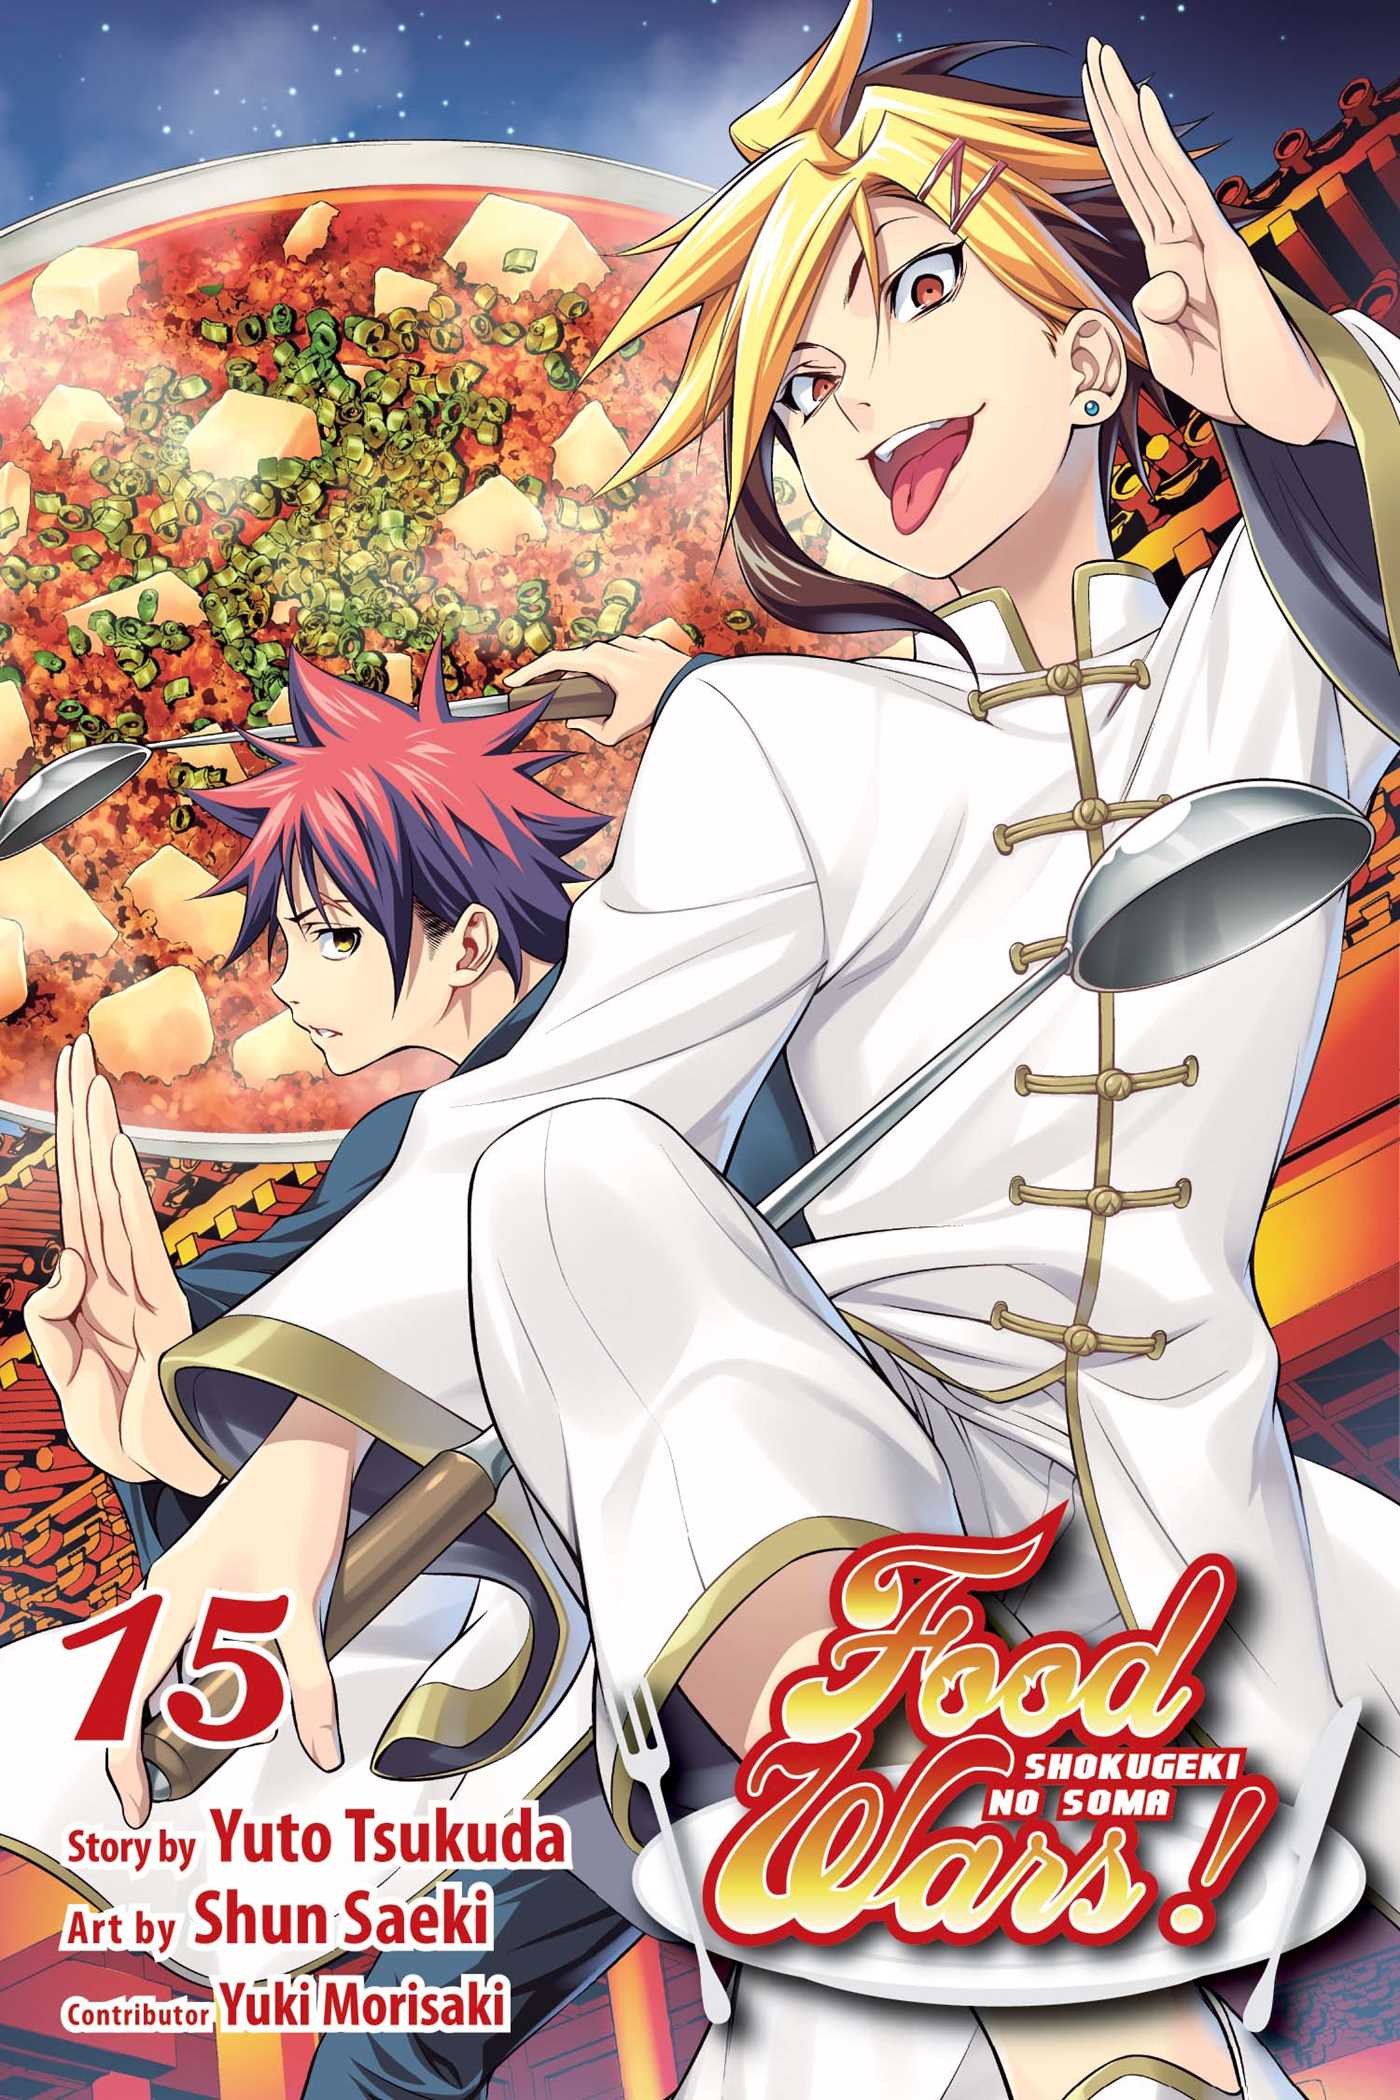 Food Wars!: Shokugeki no Soma Vol. 15 | Tsukuda, Yuto (Auteur) | Saeki, Shun (Illustrateur)